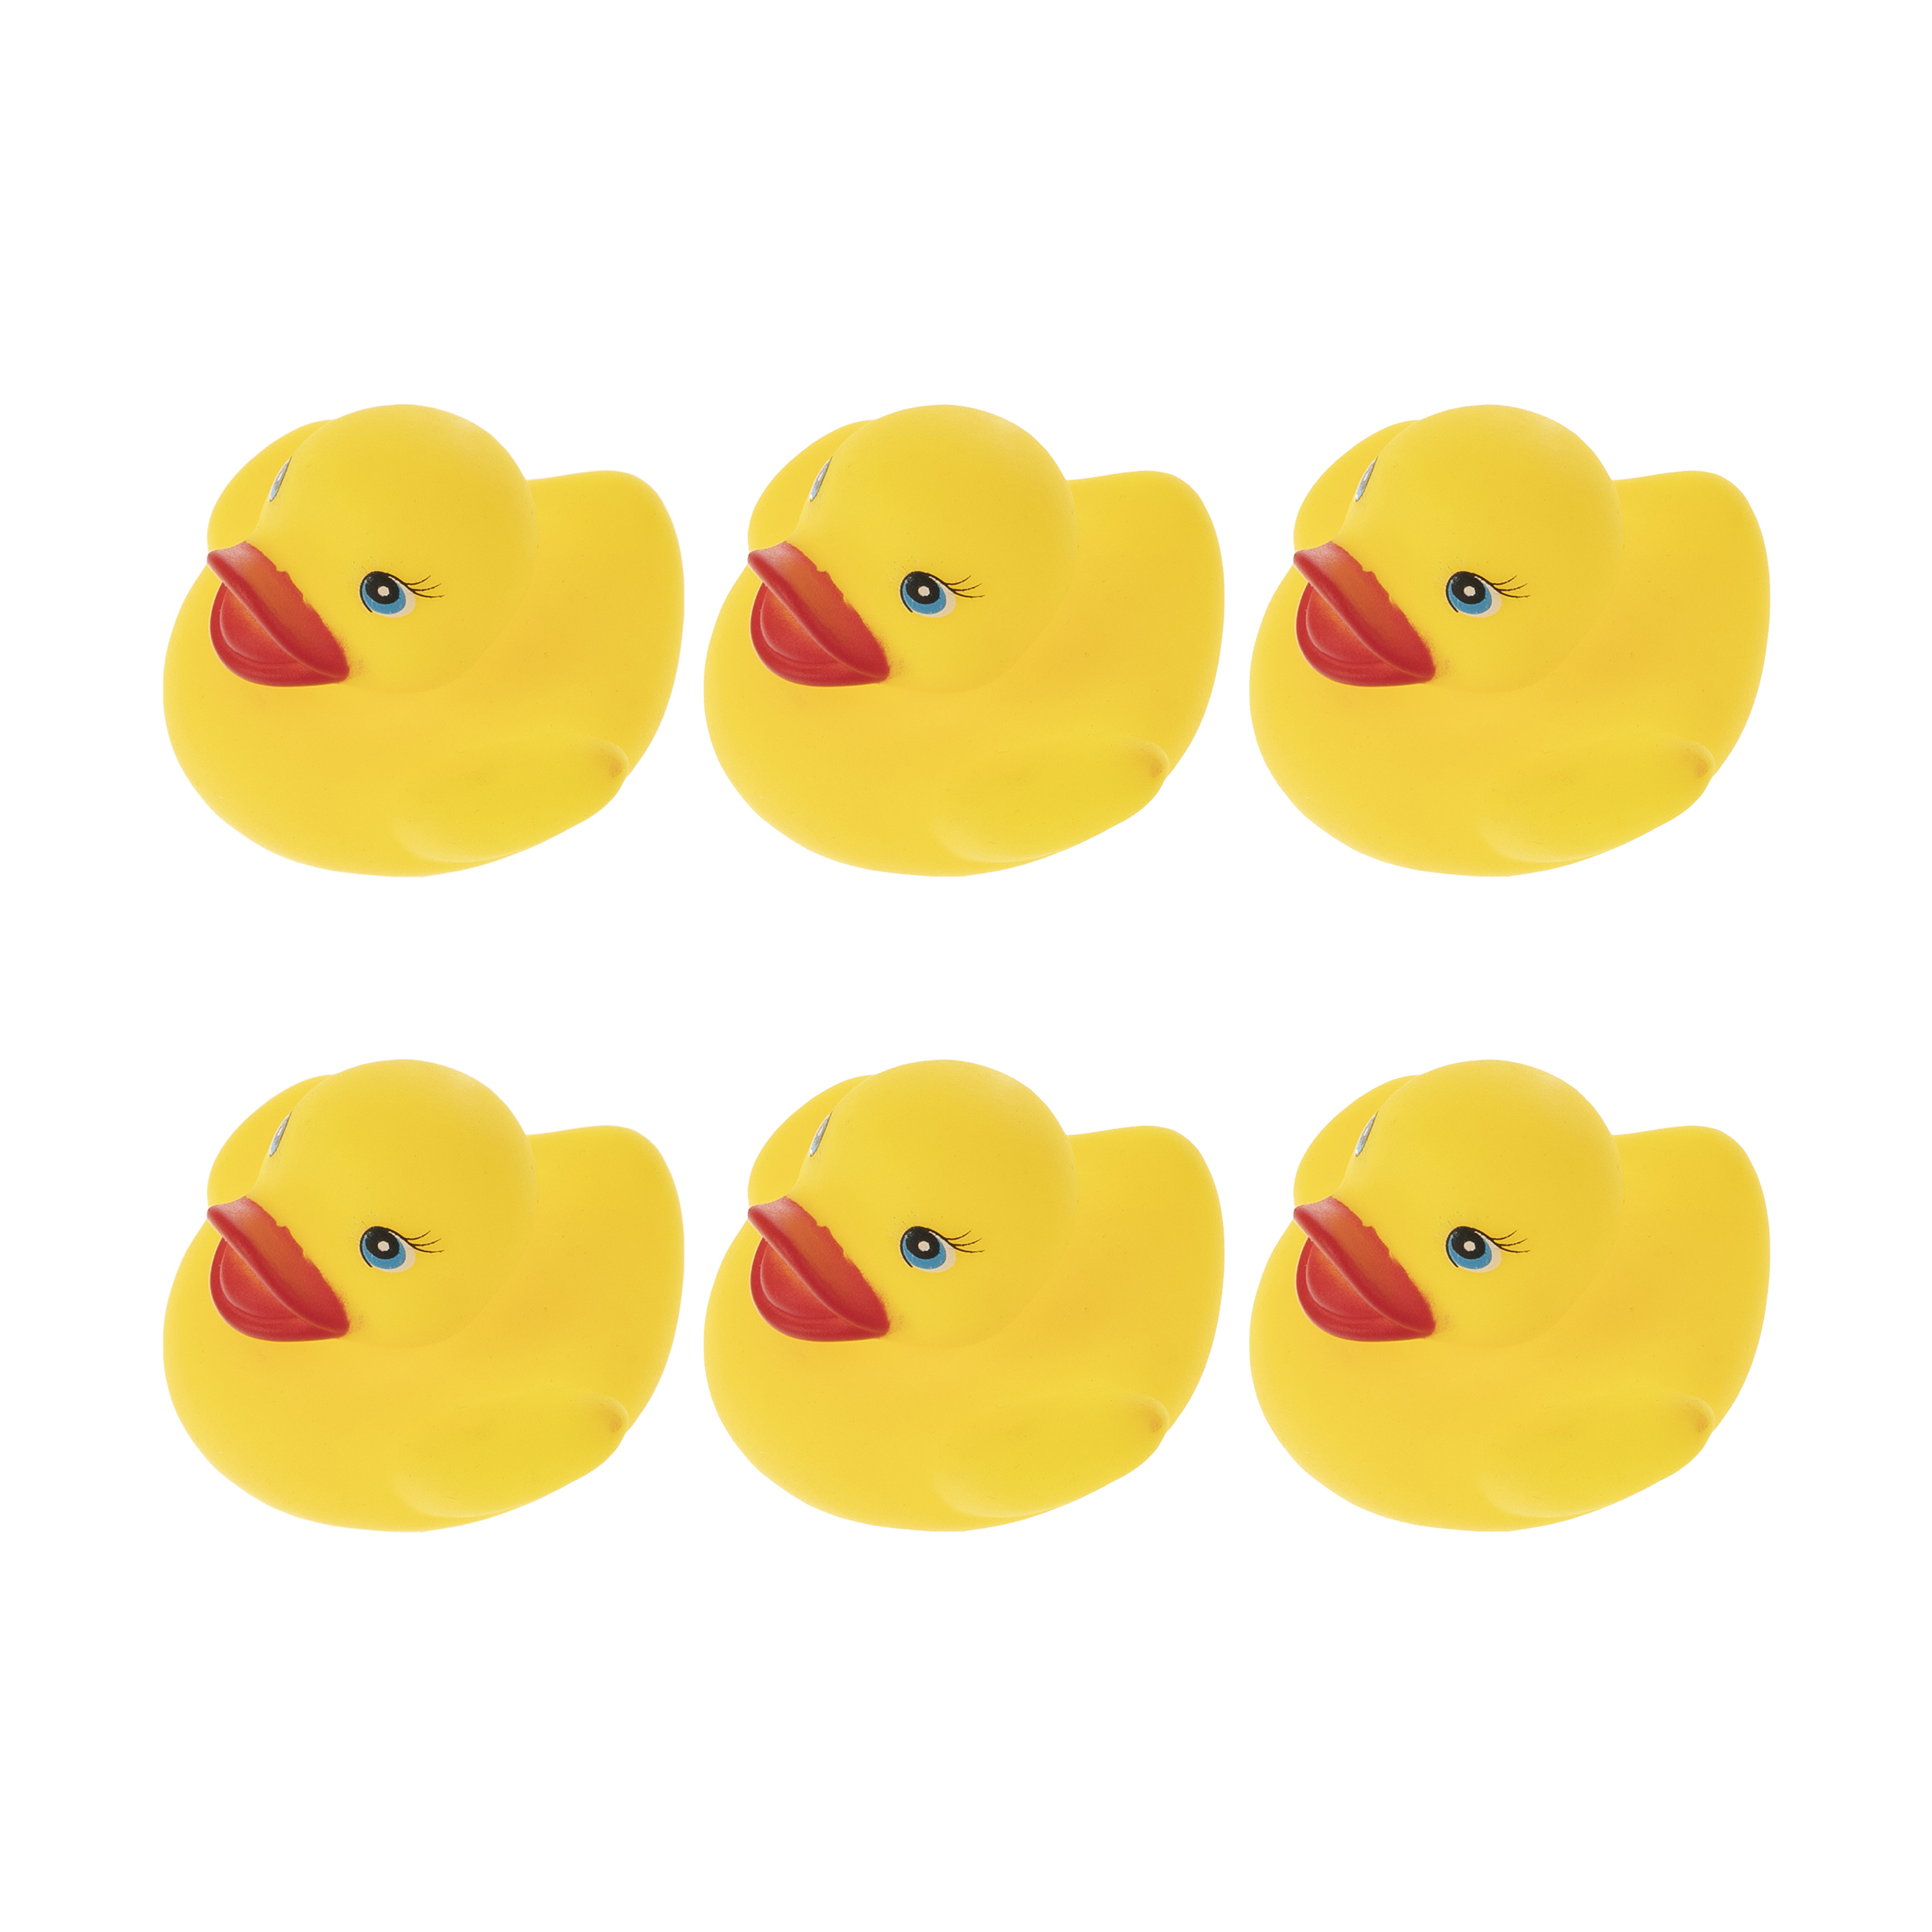 نقد و بررسی عروسک حمام طرح اردک بسته 6 عددی توسط خریداران